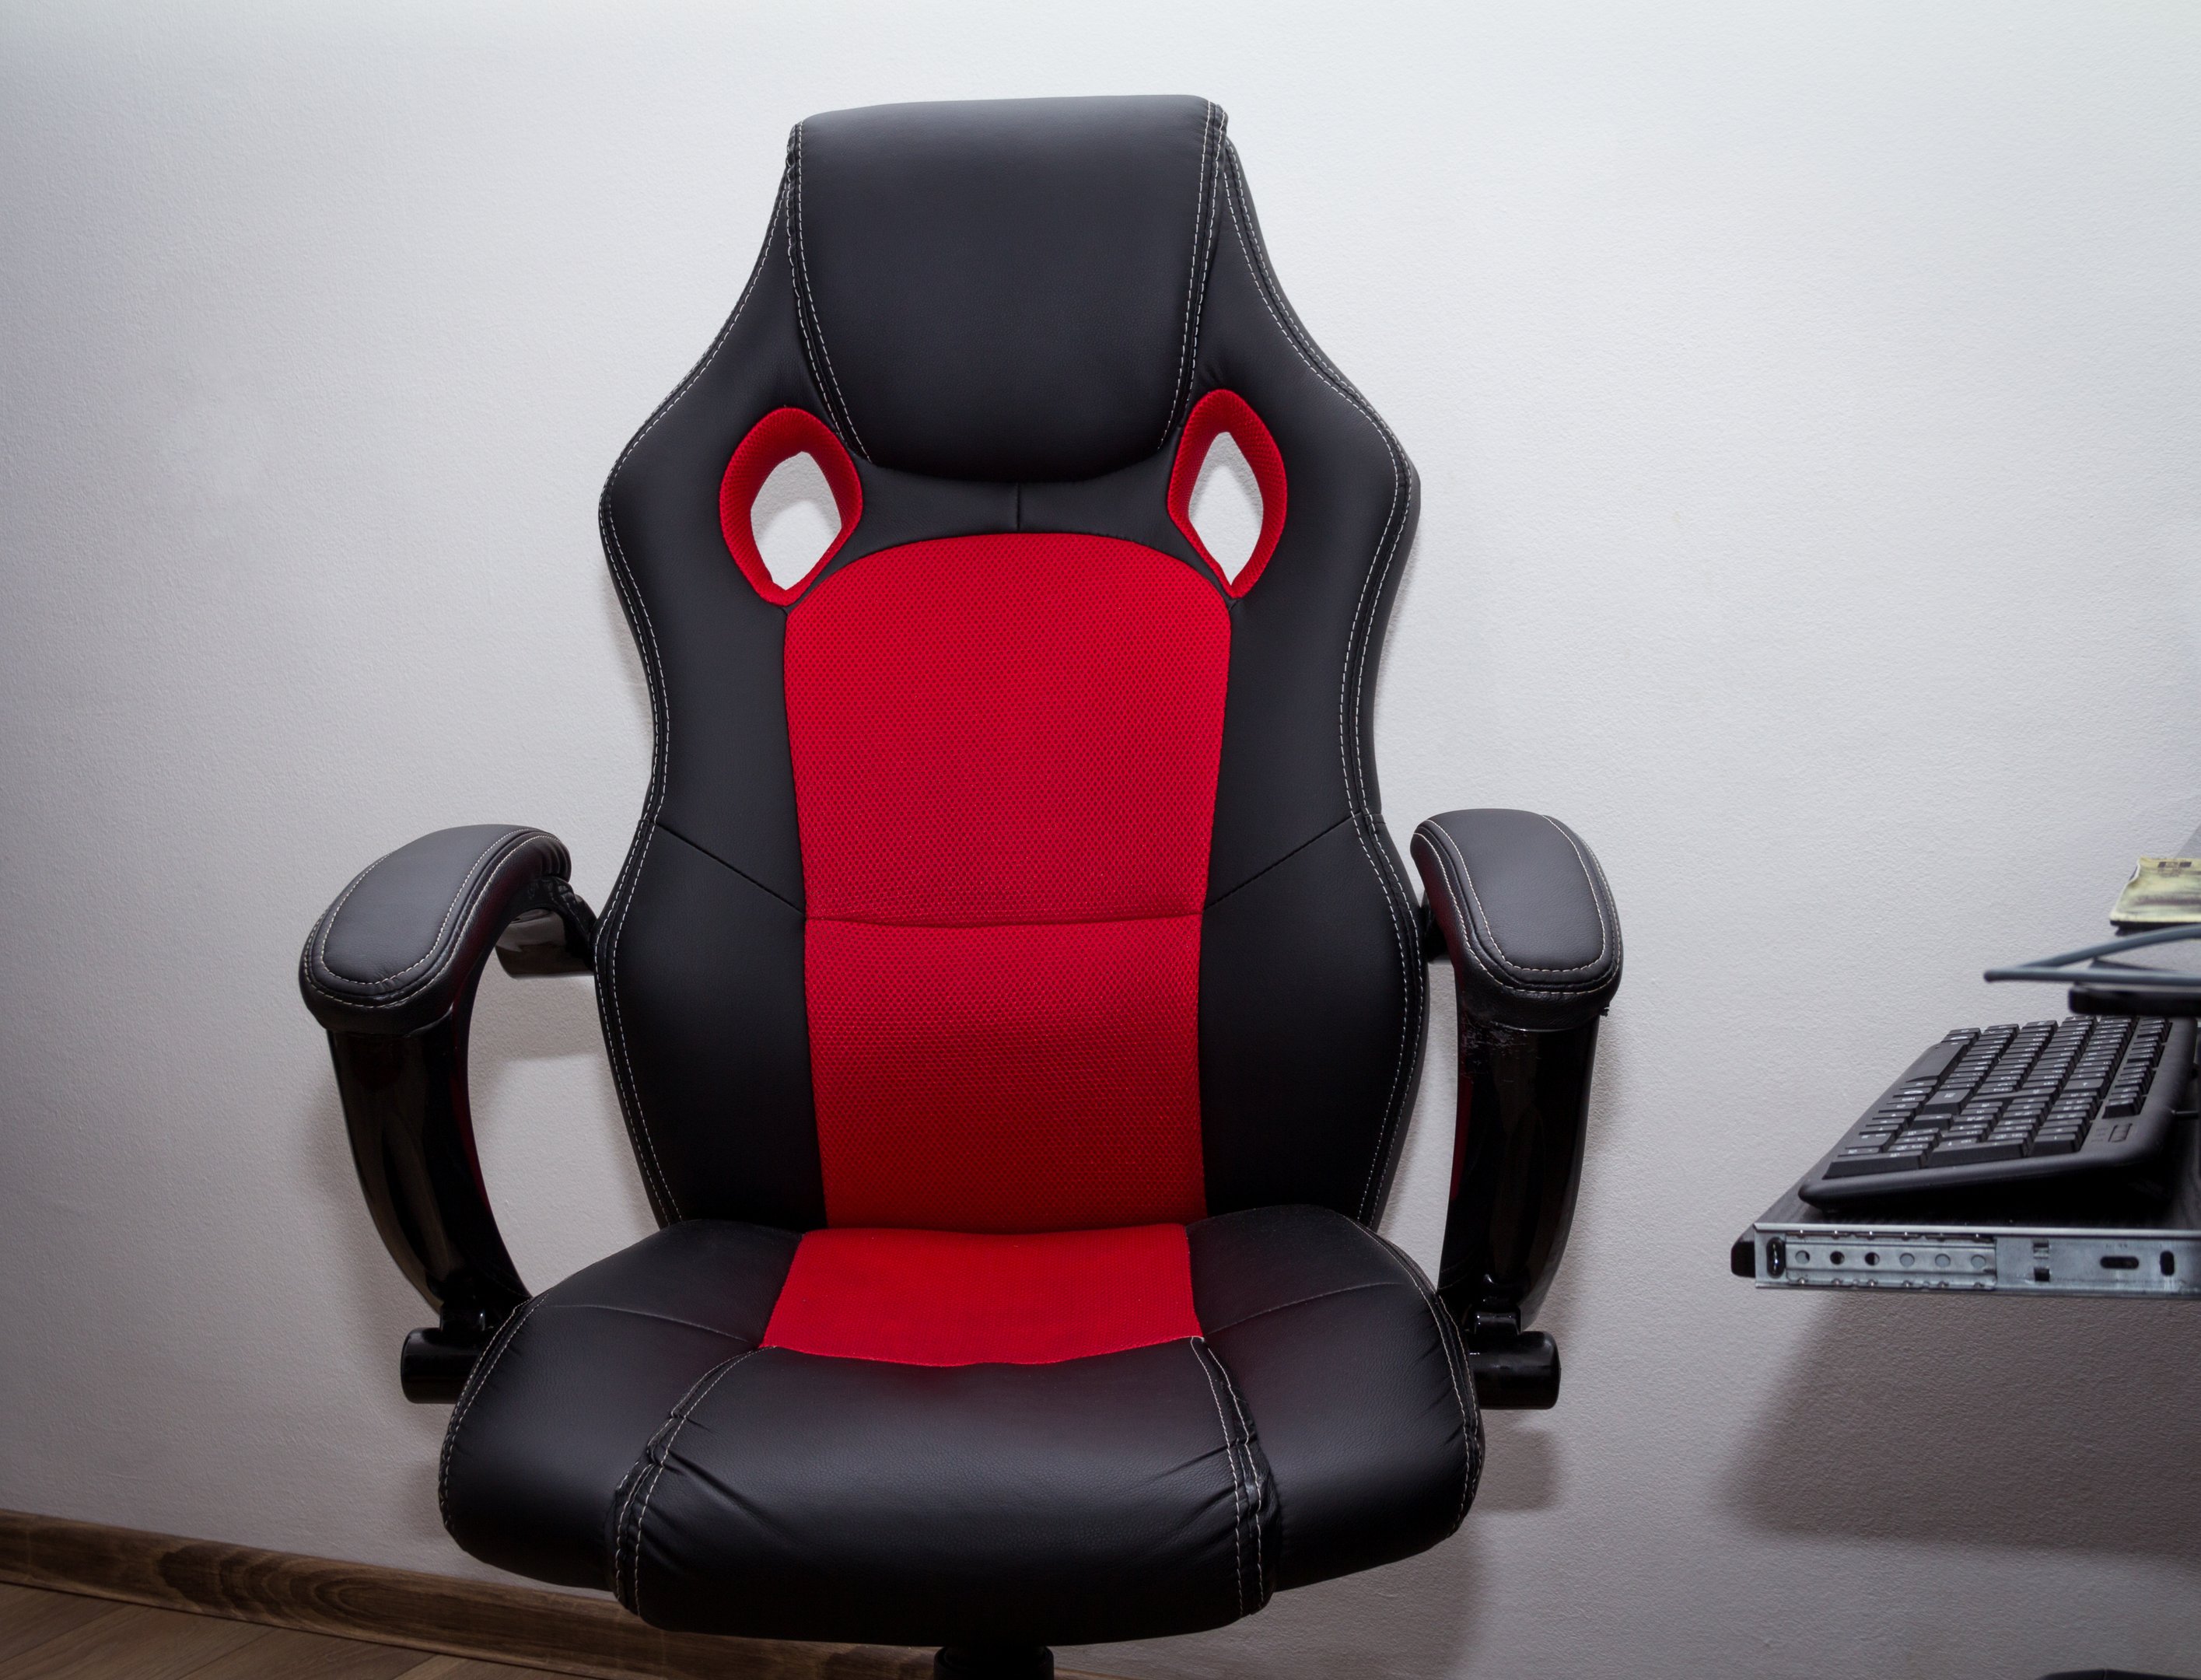 Cadeira gamer ou de escritório: qual escolher?